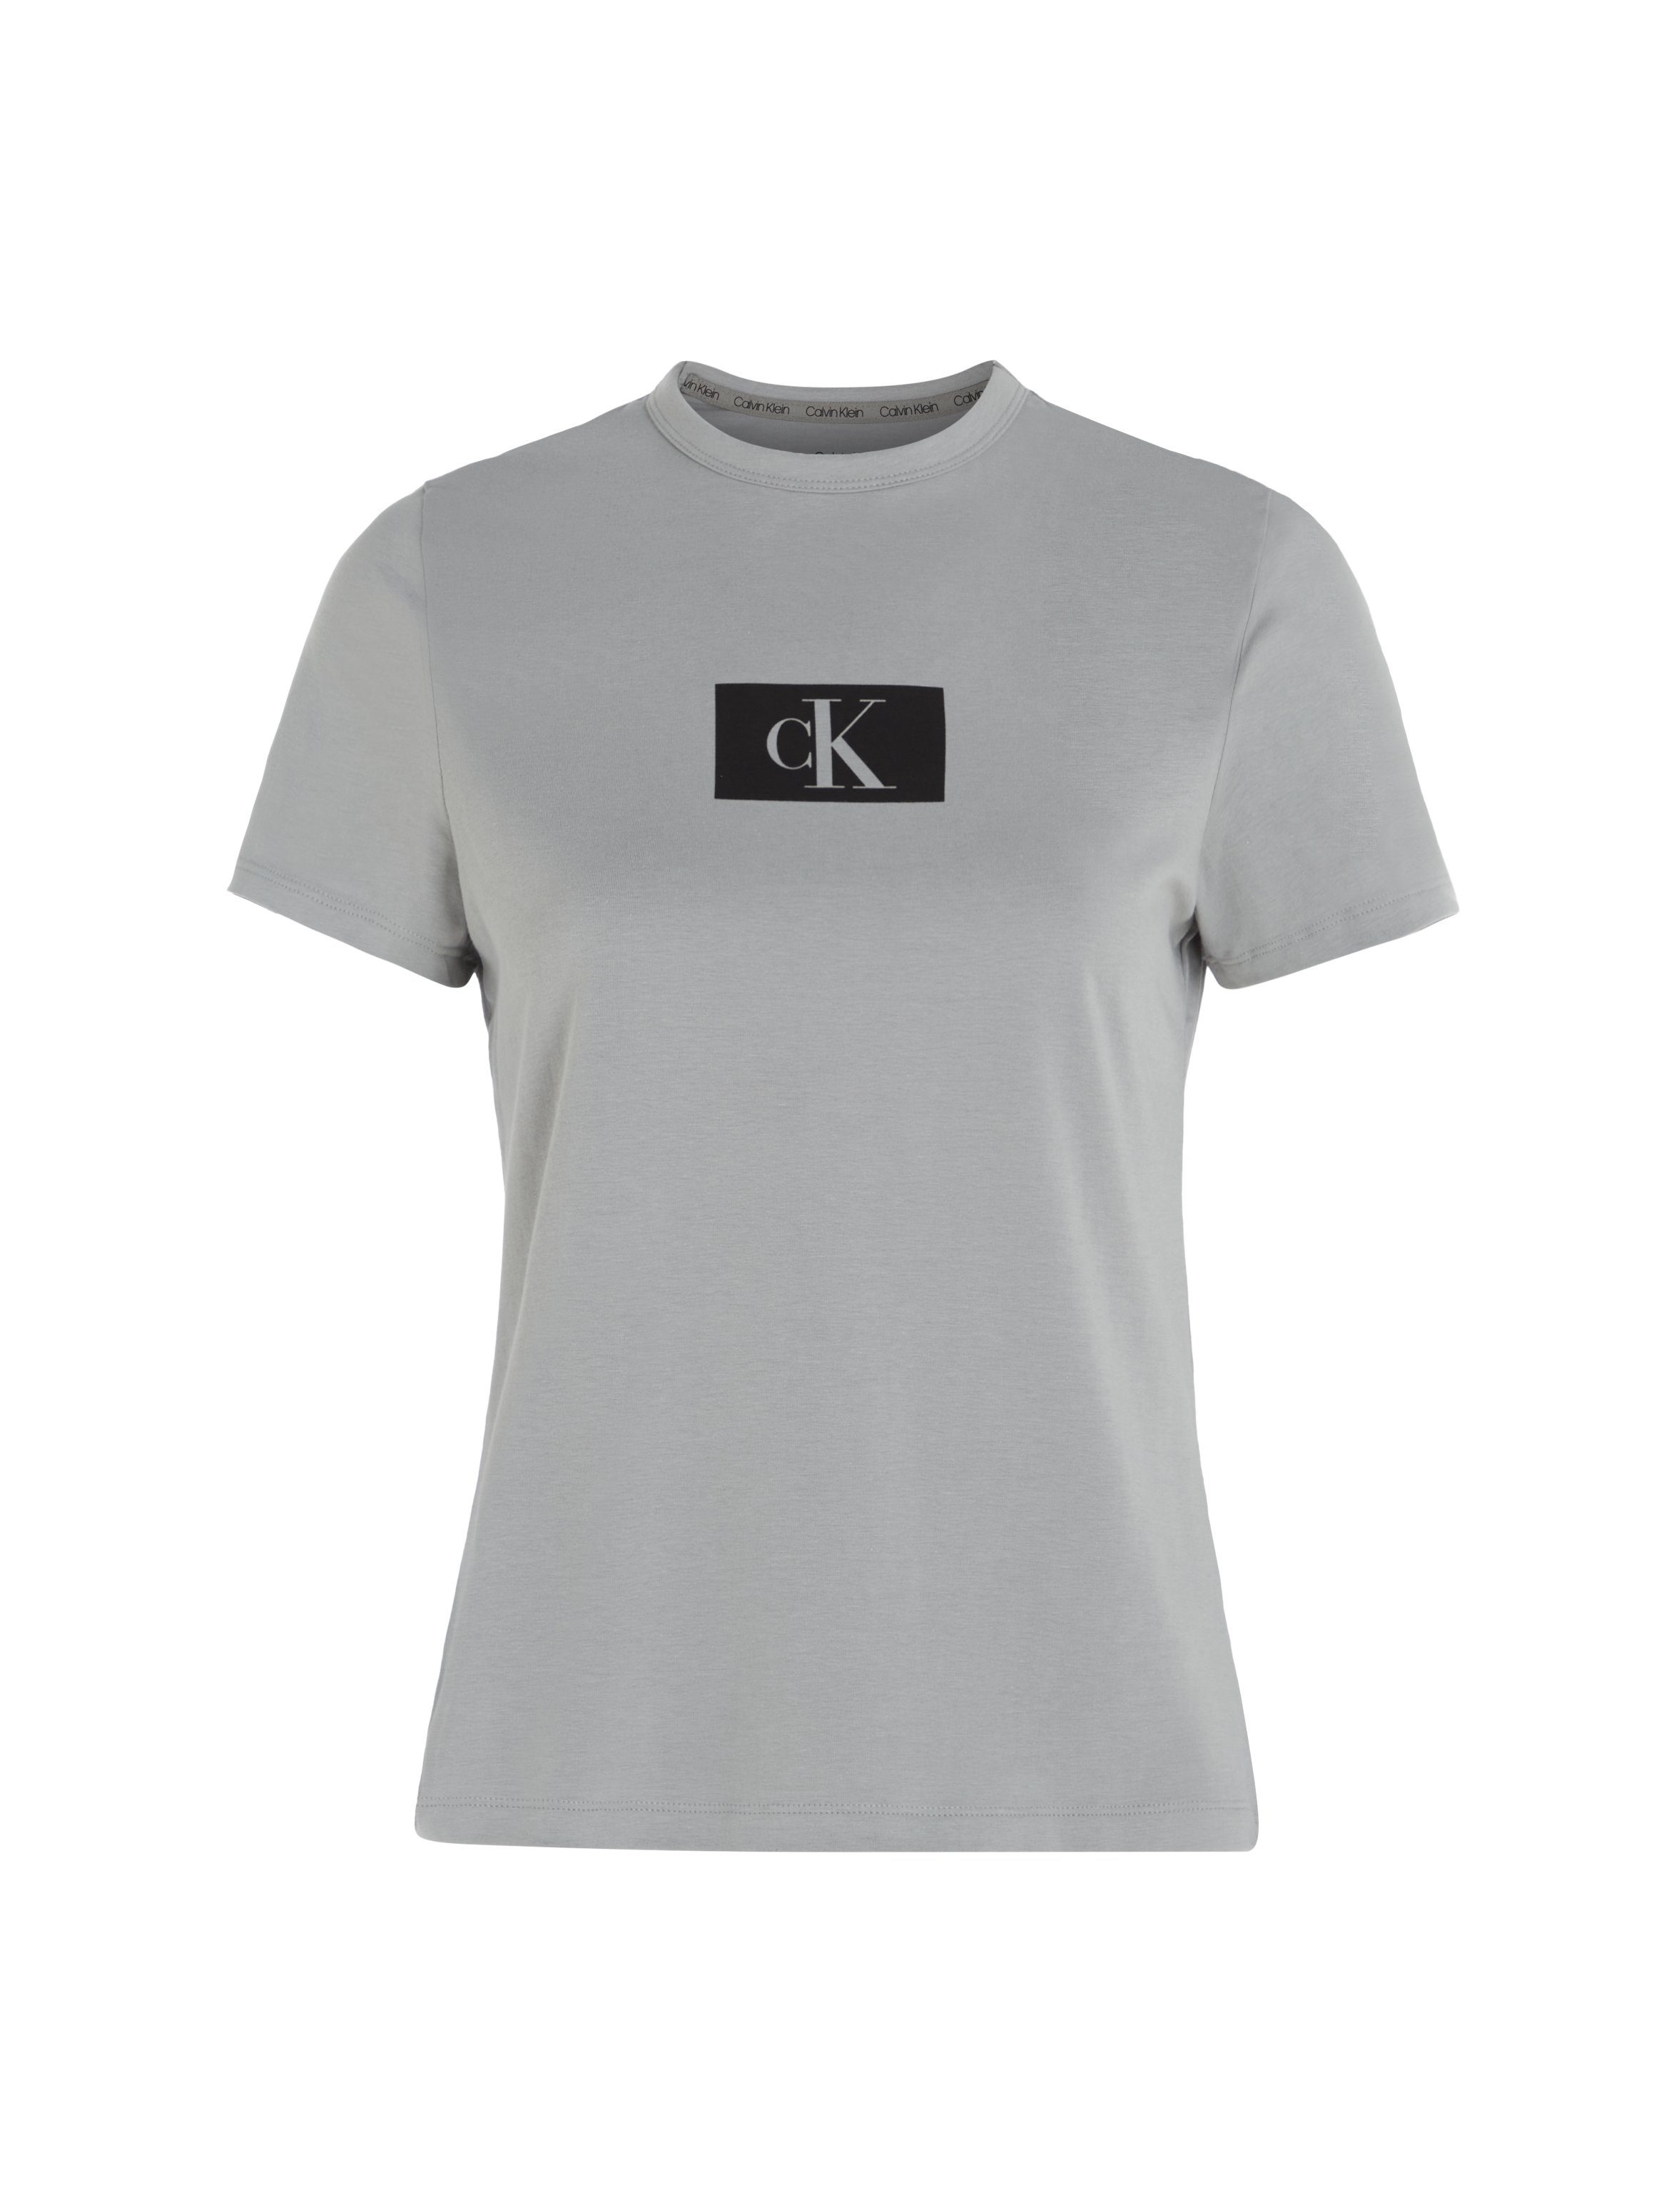 S/S CREW Kurzarmshirt GREY-HEATHER Calvin NECK Klein Underwear